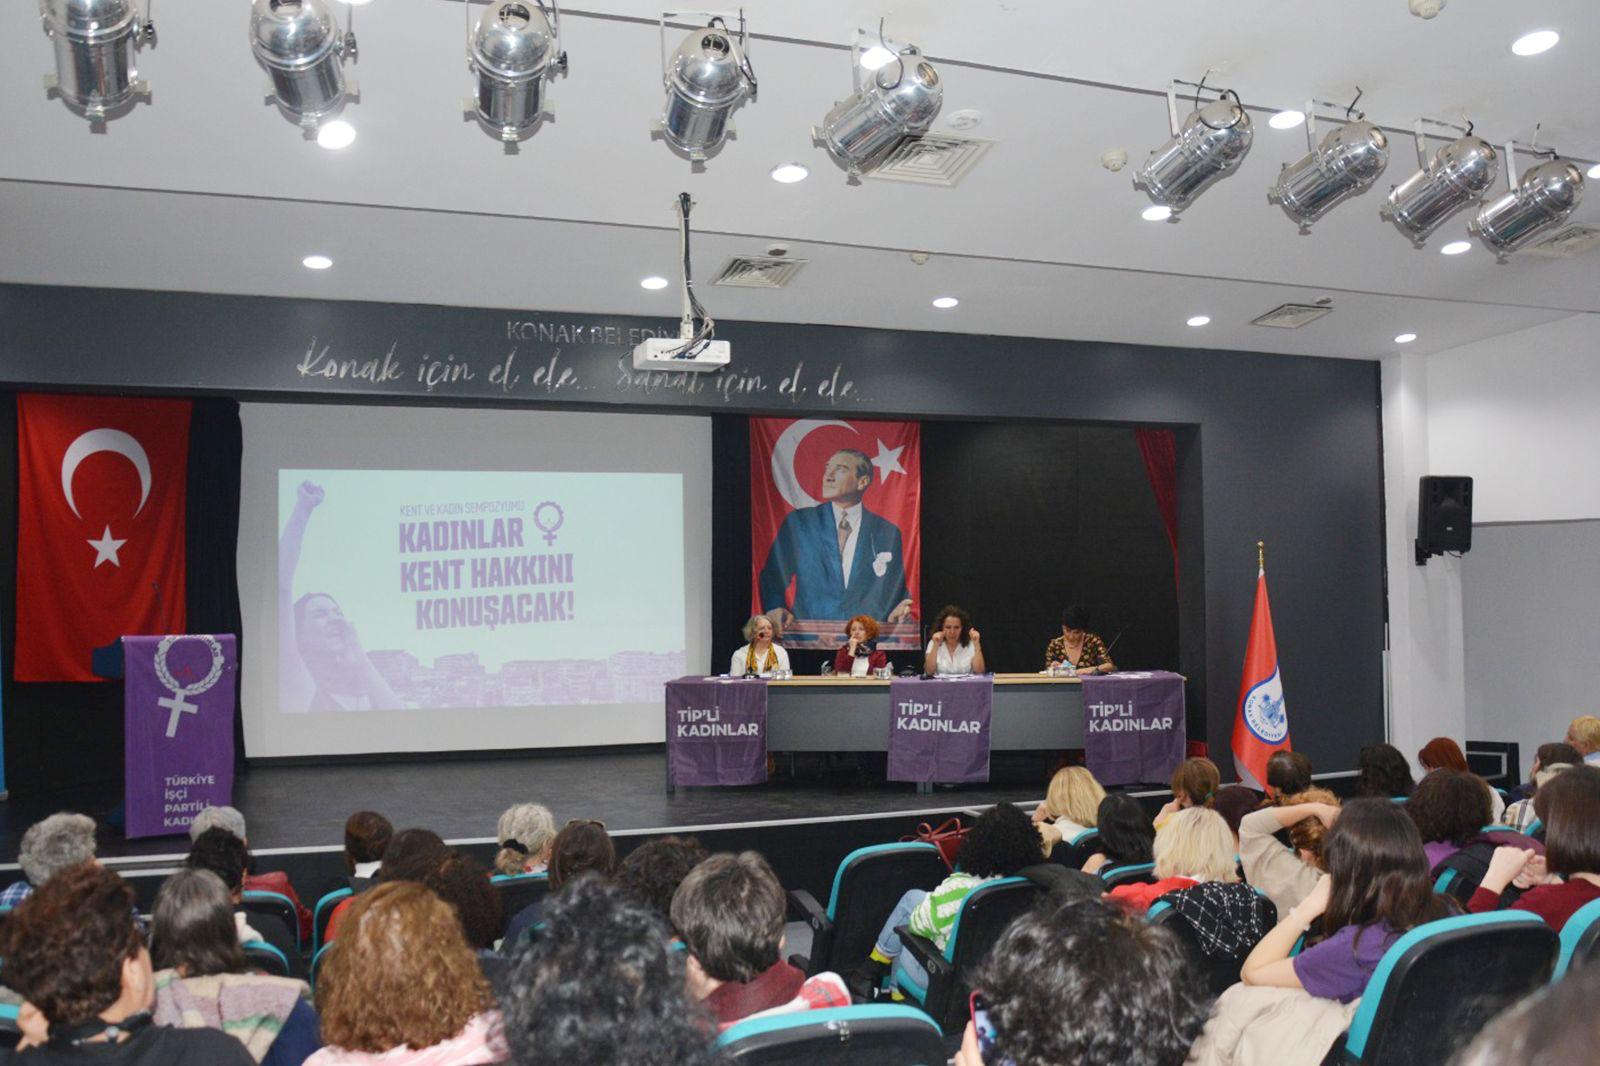 Ti̇p’li Kadınlar İzmir’de Kent Ve Kadın Sempozyumu Düzenledi (3)